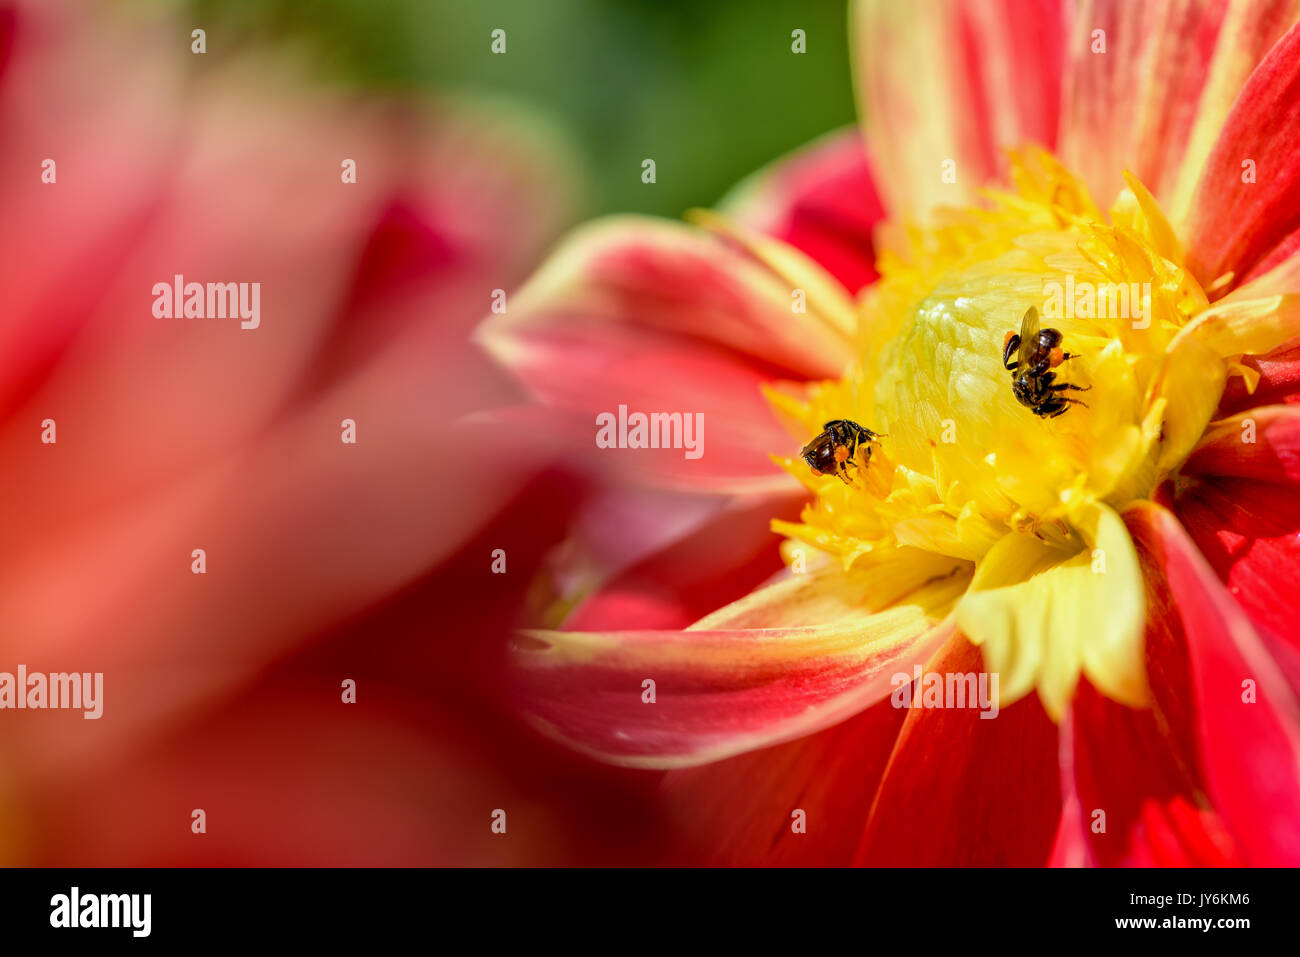 Schließen Sie zwei Bienen auf der Suche nach Nektar auf gelben Blütenblättern der Mittlere rote Blume von Dahlia Hybriden Stockfoto